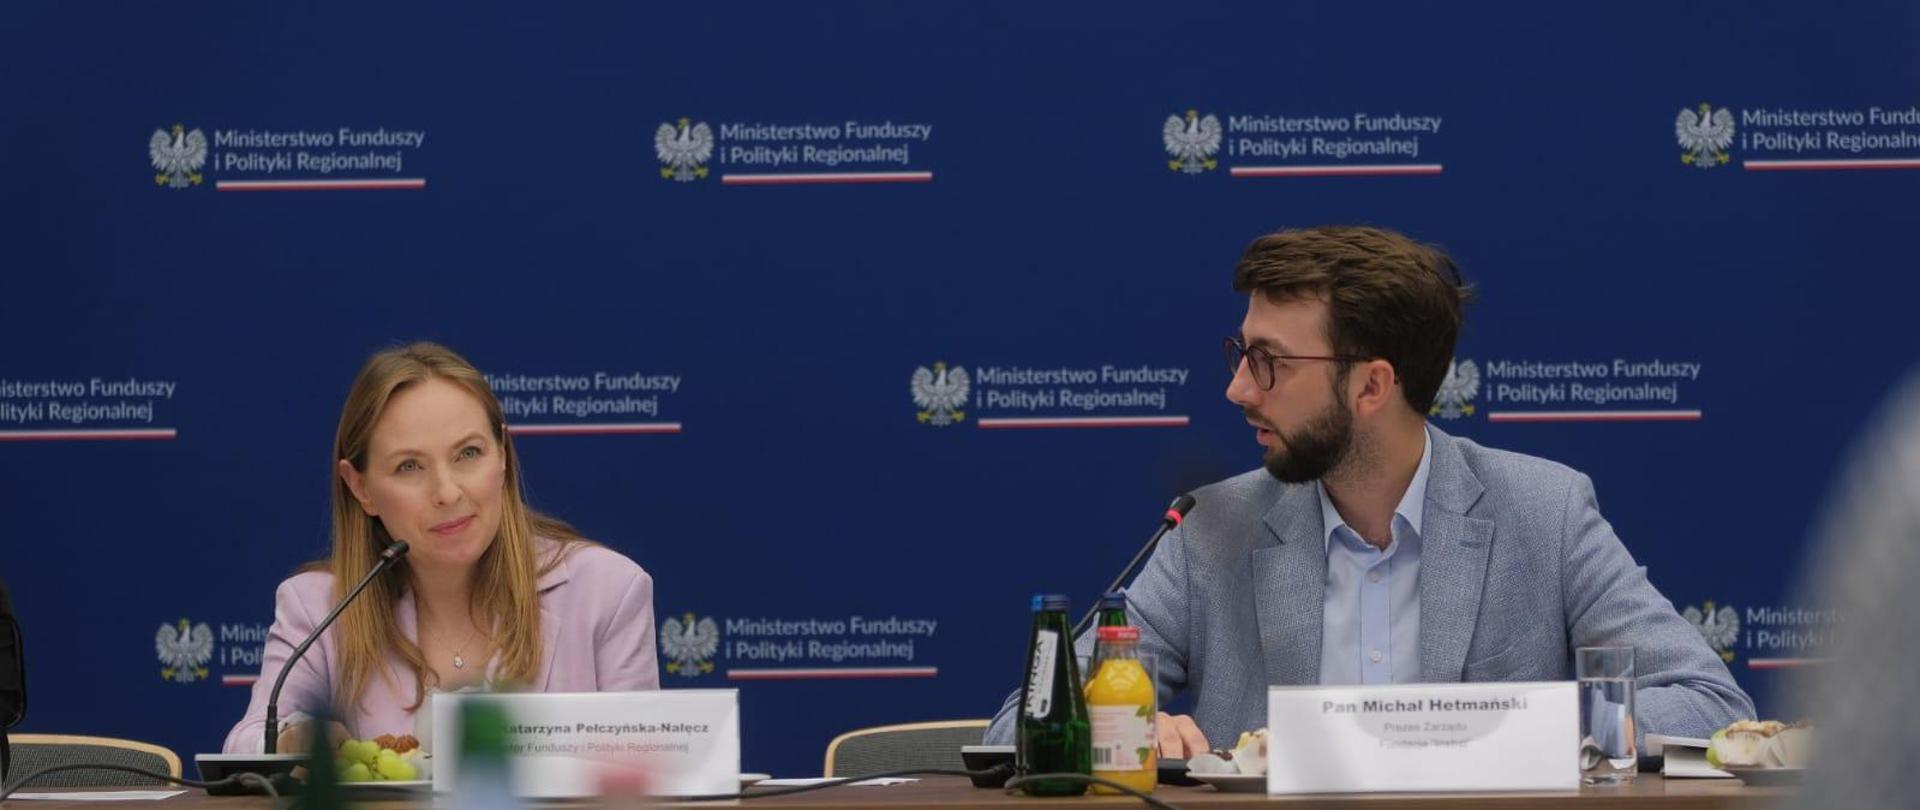 Dwie osoby siedzą obok siebie przy stole. Pierwsza od lewej siedzi minister Katarzyna Pełczyńska-Nałęcz.